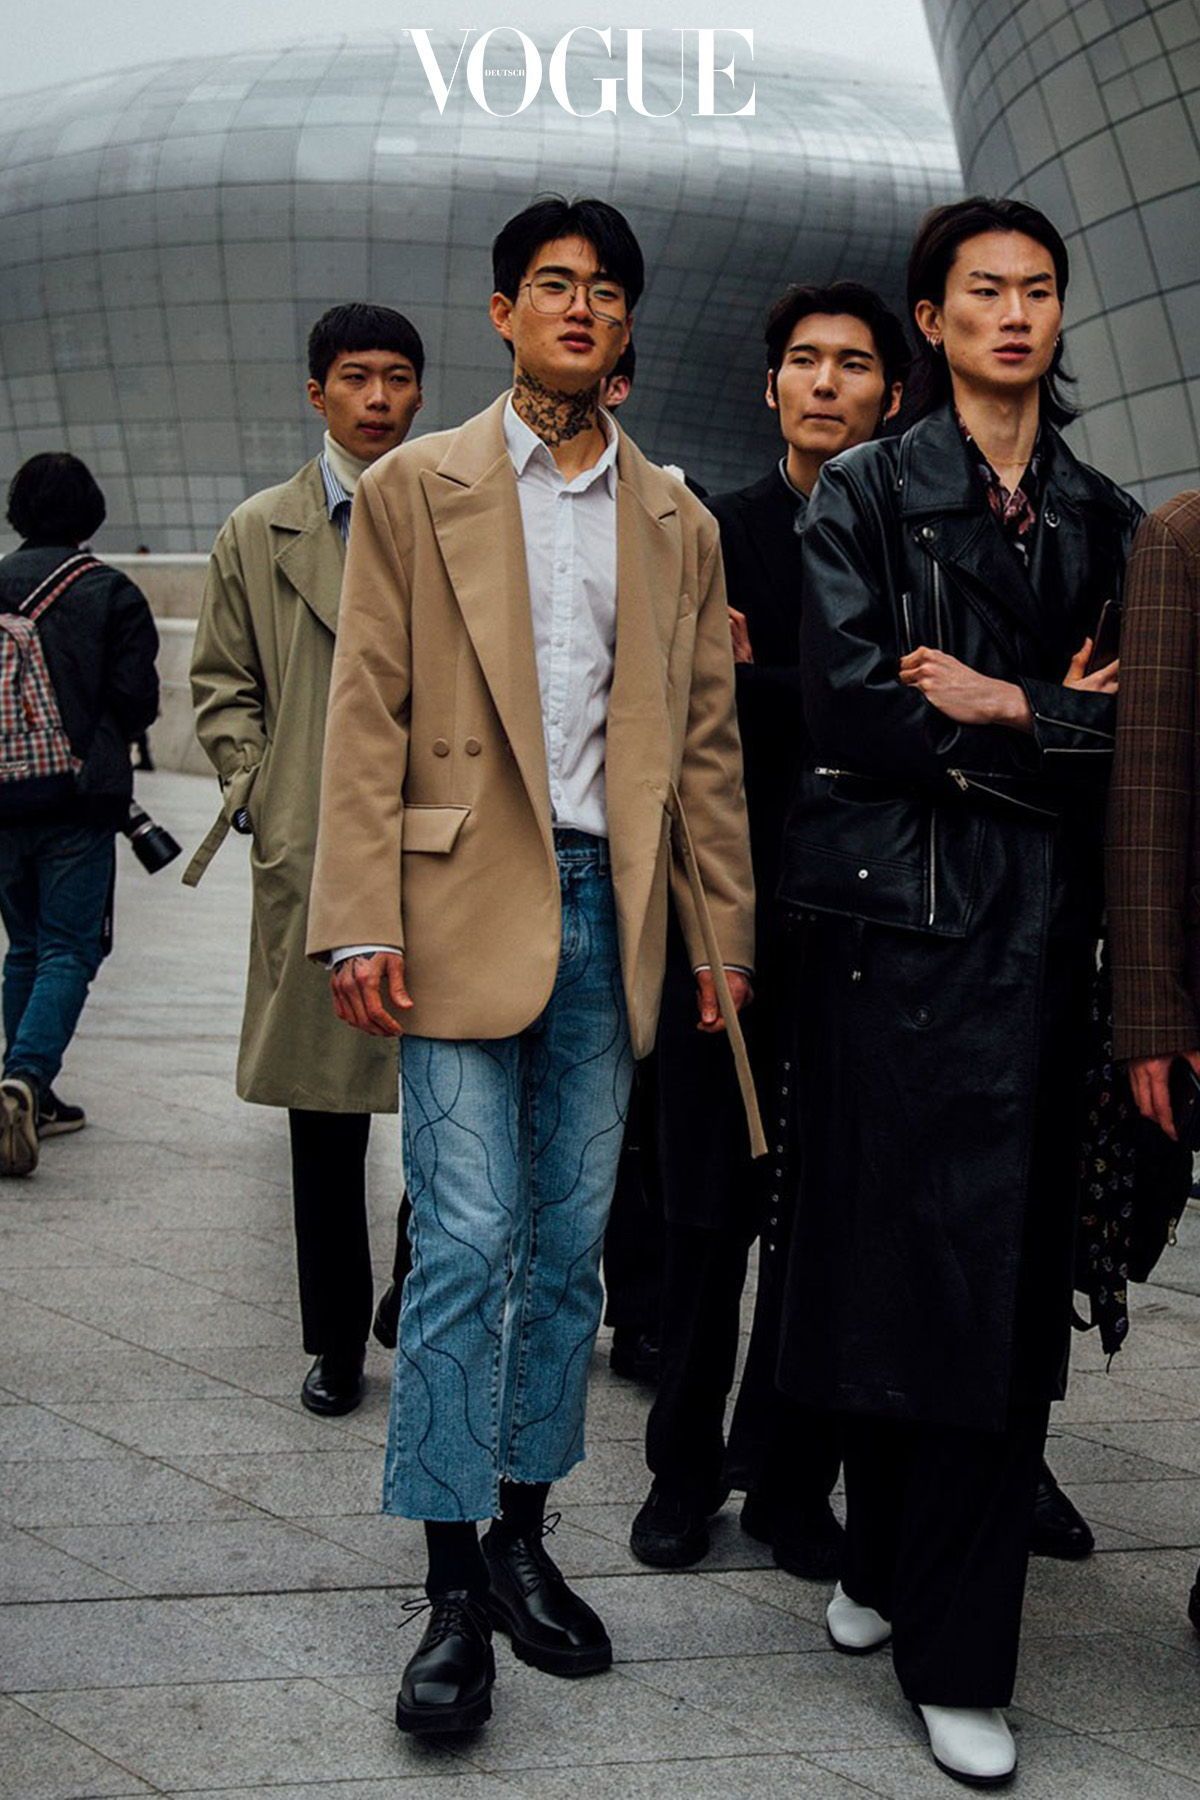 Die besten Outfits von der Seoul Fashion Week - Die besten Outfits von der Seoul Fashion Week -   16 style Chic homme ideas